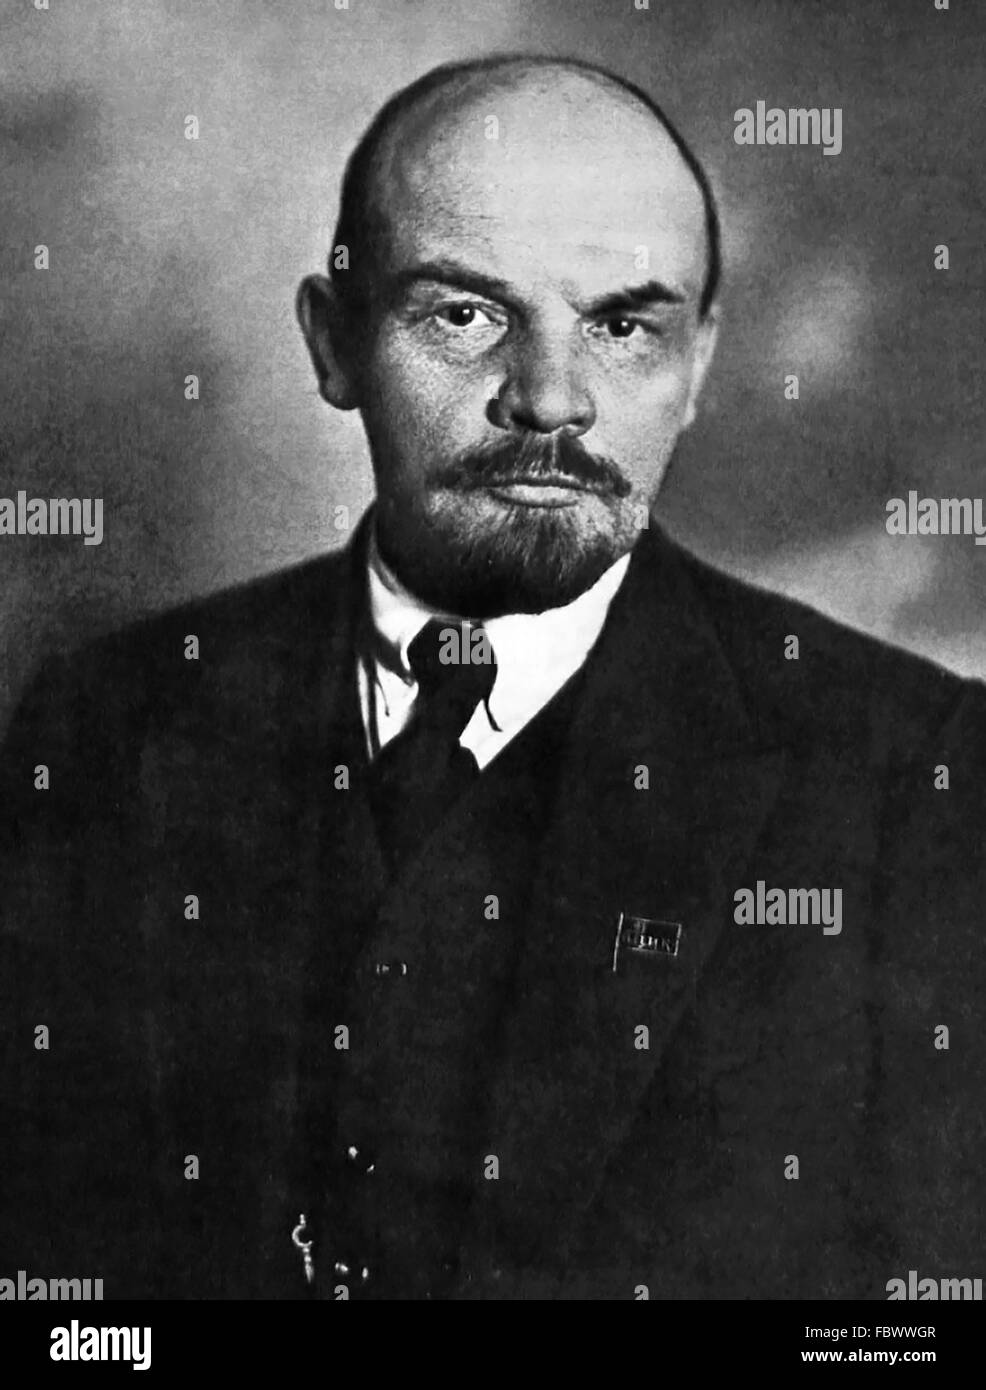 Lenin. Porträt von Vladimir Lenin (Vladimir Ilyich Ulyanov), Vorsitzender des Rates der Volkskommissare der russischen SFSR und anschließend Premier von der sowjetischen Union, c.1920 Stockfoto